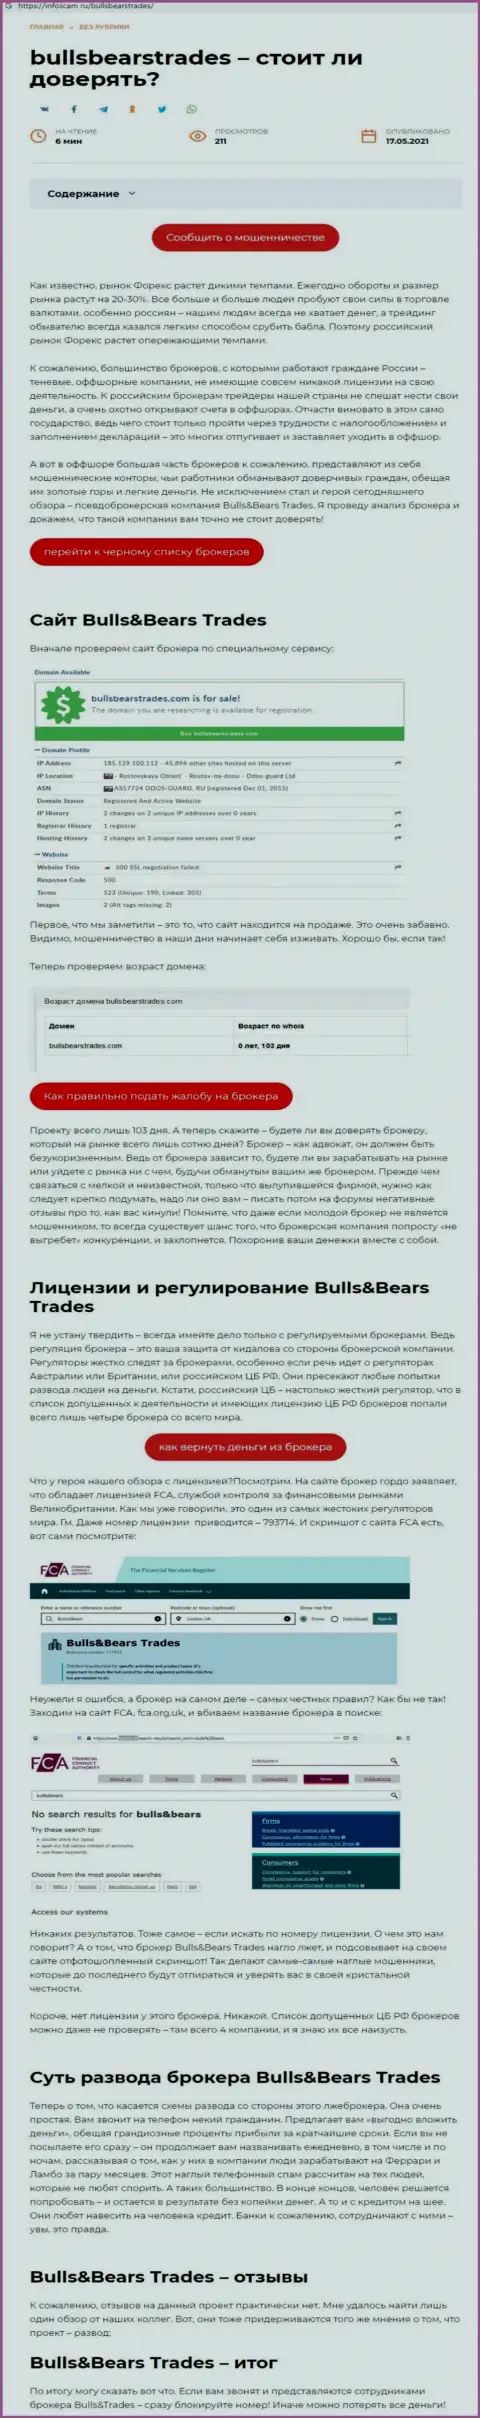 BullsBearsTrades - КИДАЛА !!! Схемы обмана (обзор мошеннических уловок)